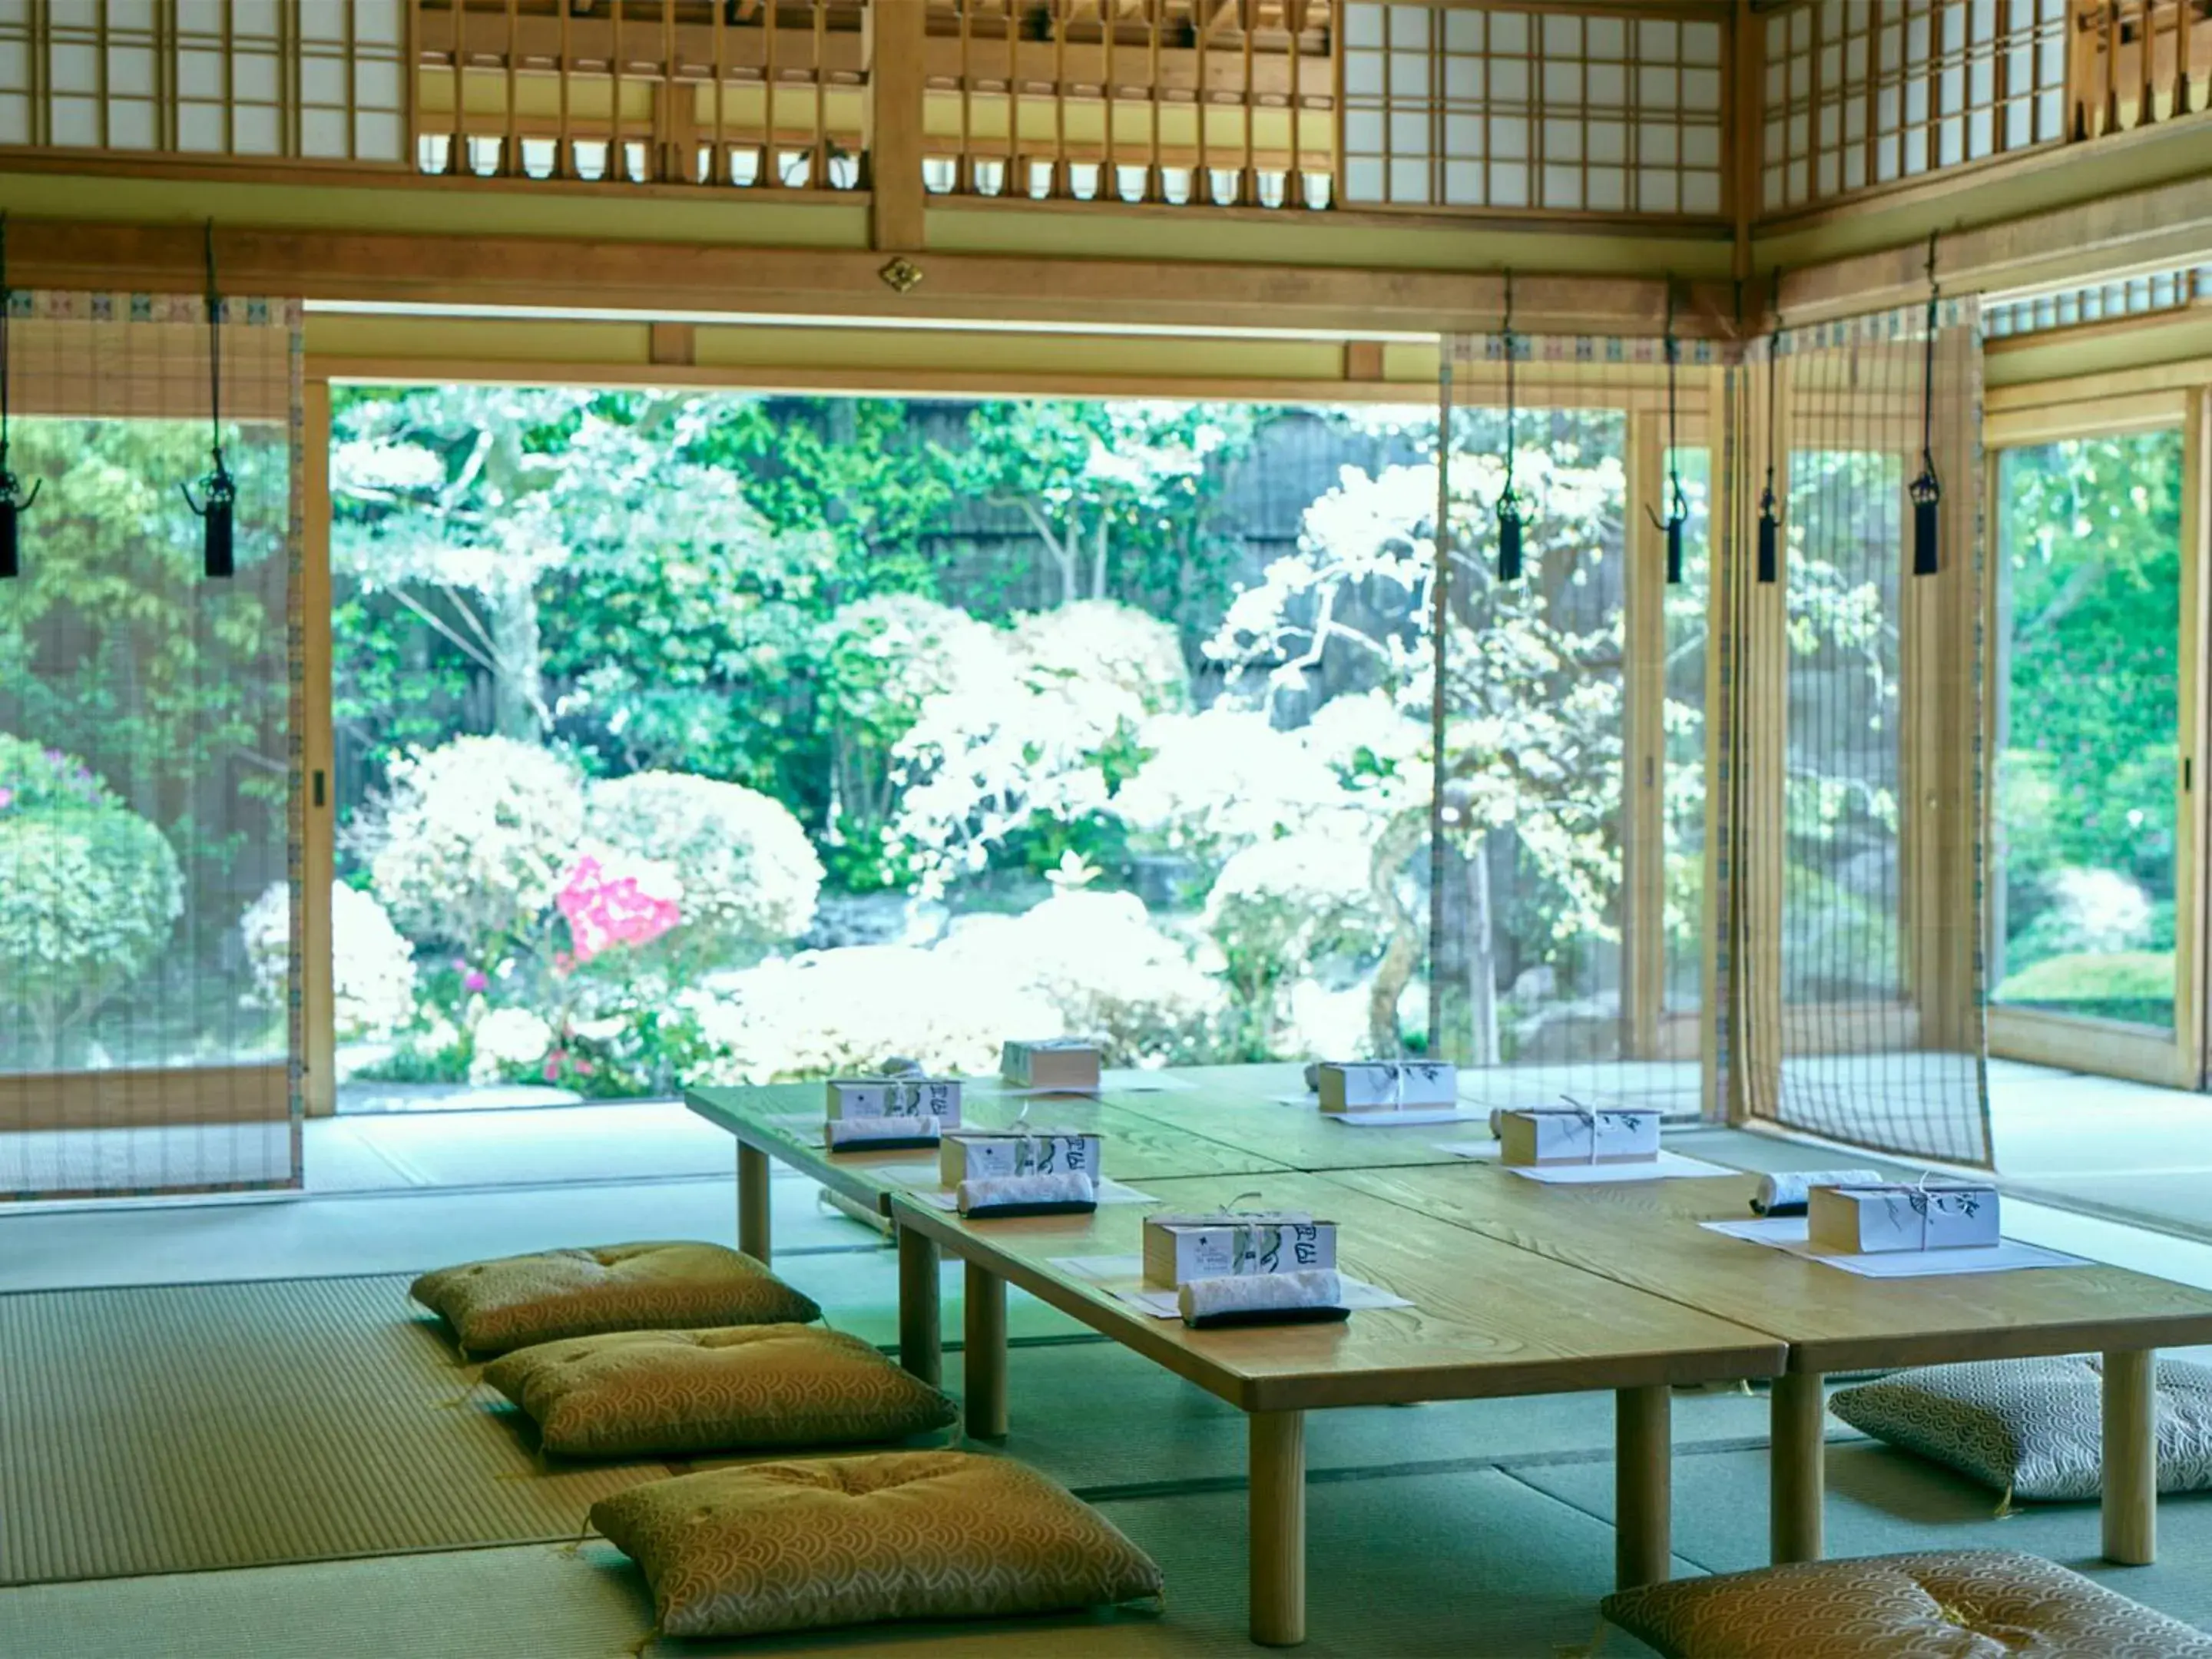 Area and facilities in Ryokan Genhouin